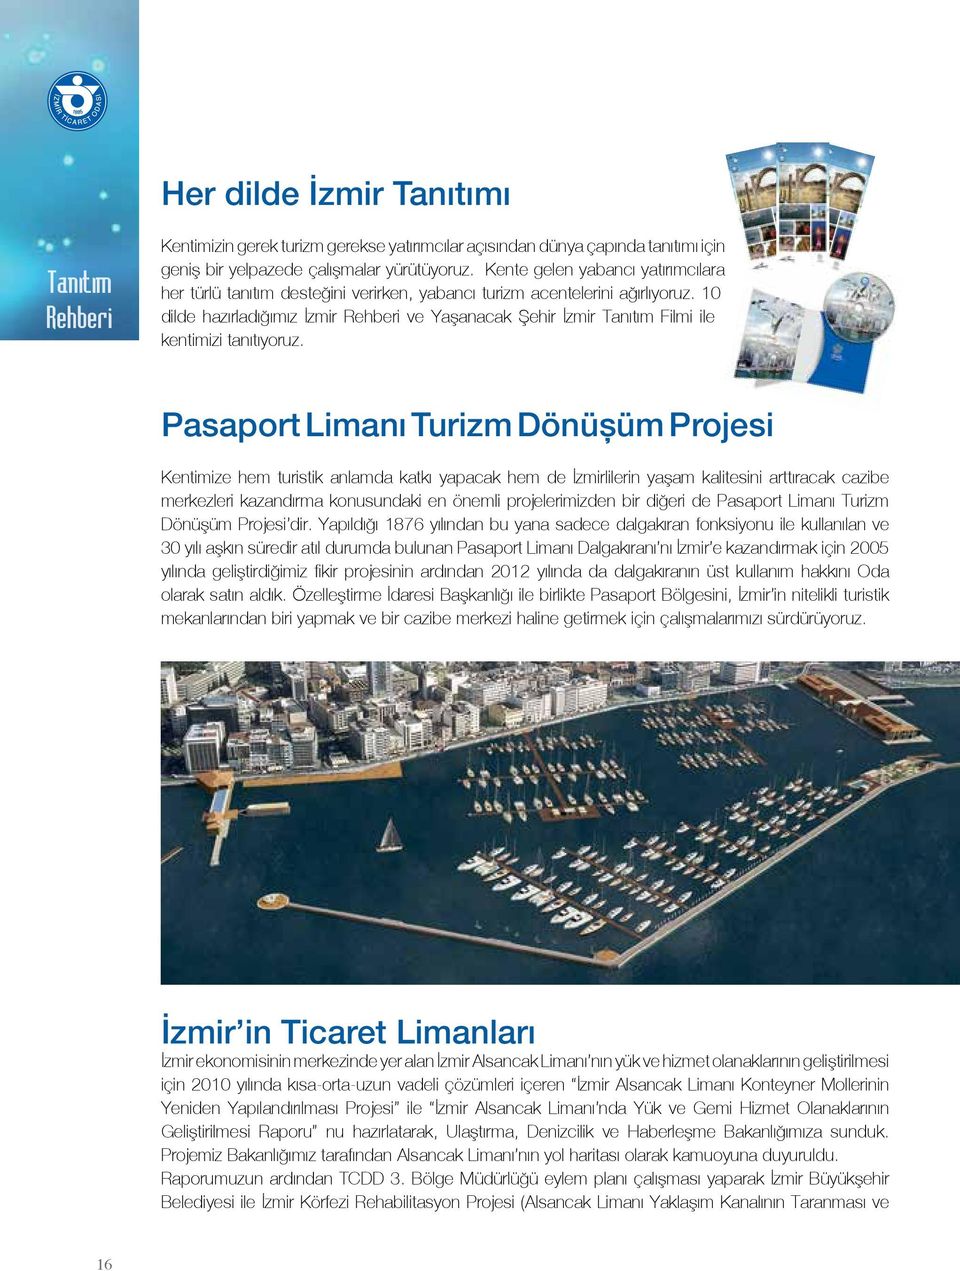 10 dilde hazırladığımız İzmir Rehberi ve Yaşanacak Şehir İzmir Tanıtım Filmi ile kentimizi tanıtıyoruz.